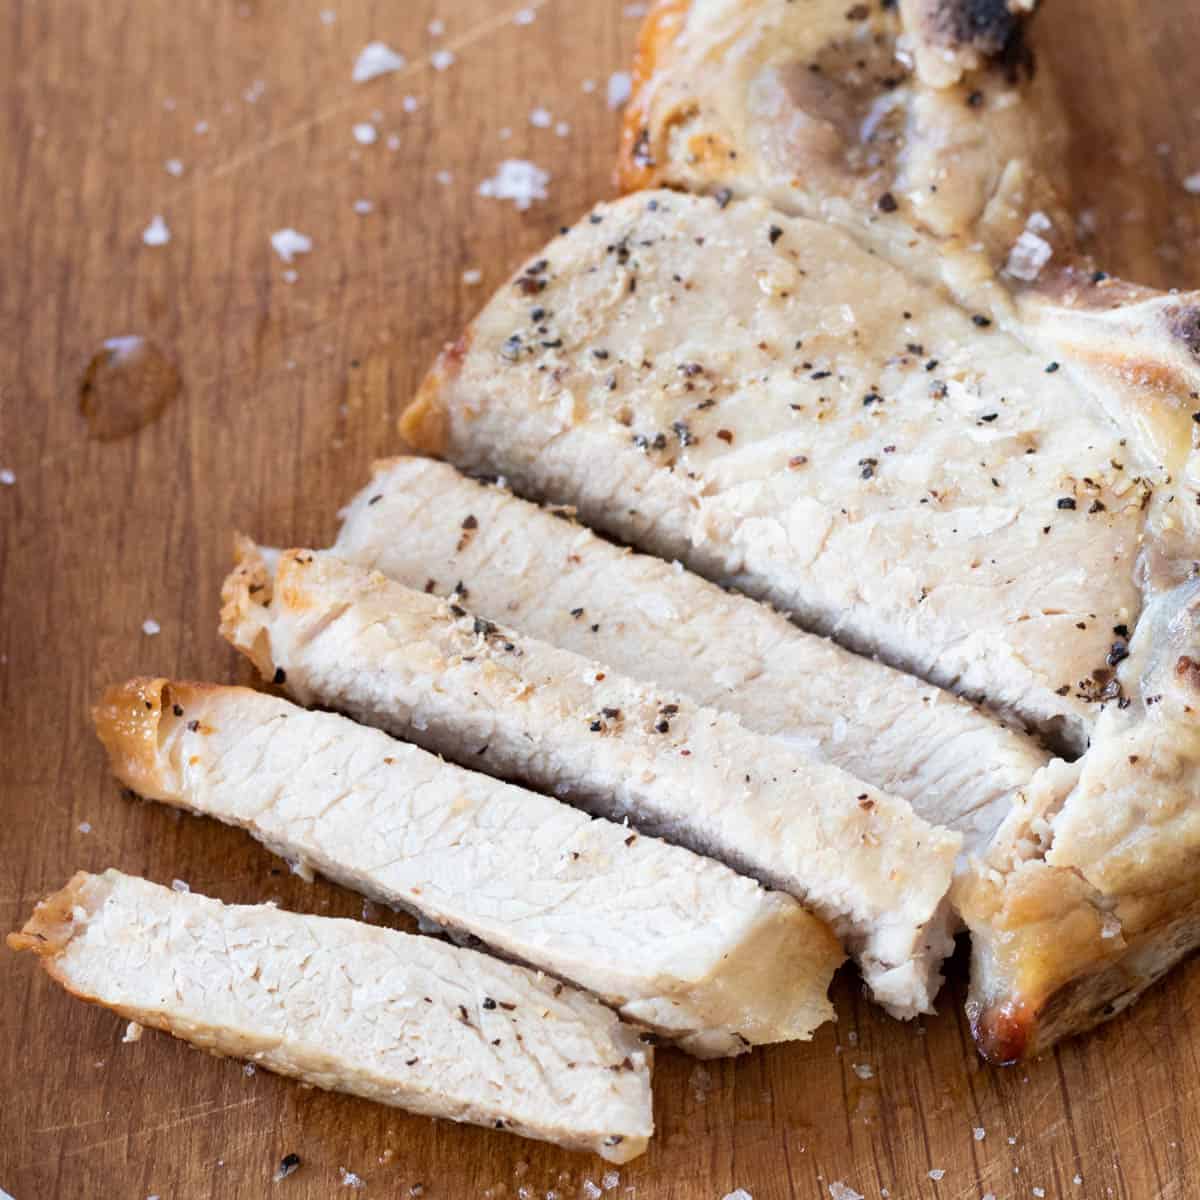 A sliced pork chop on a chopping board.